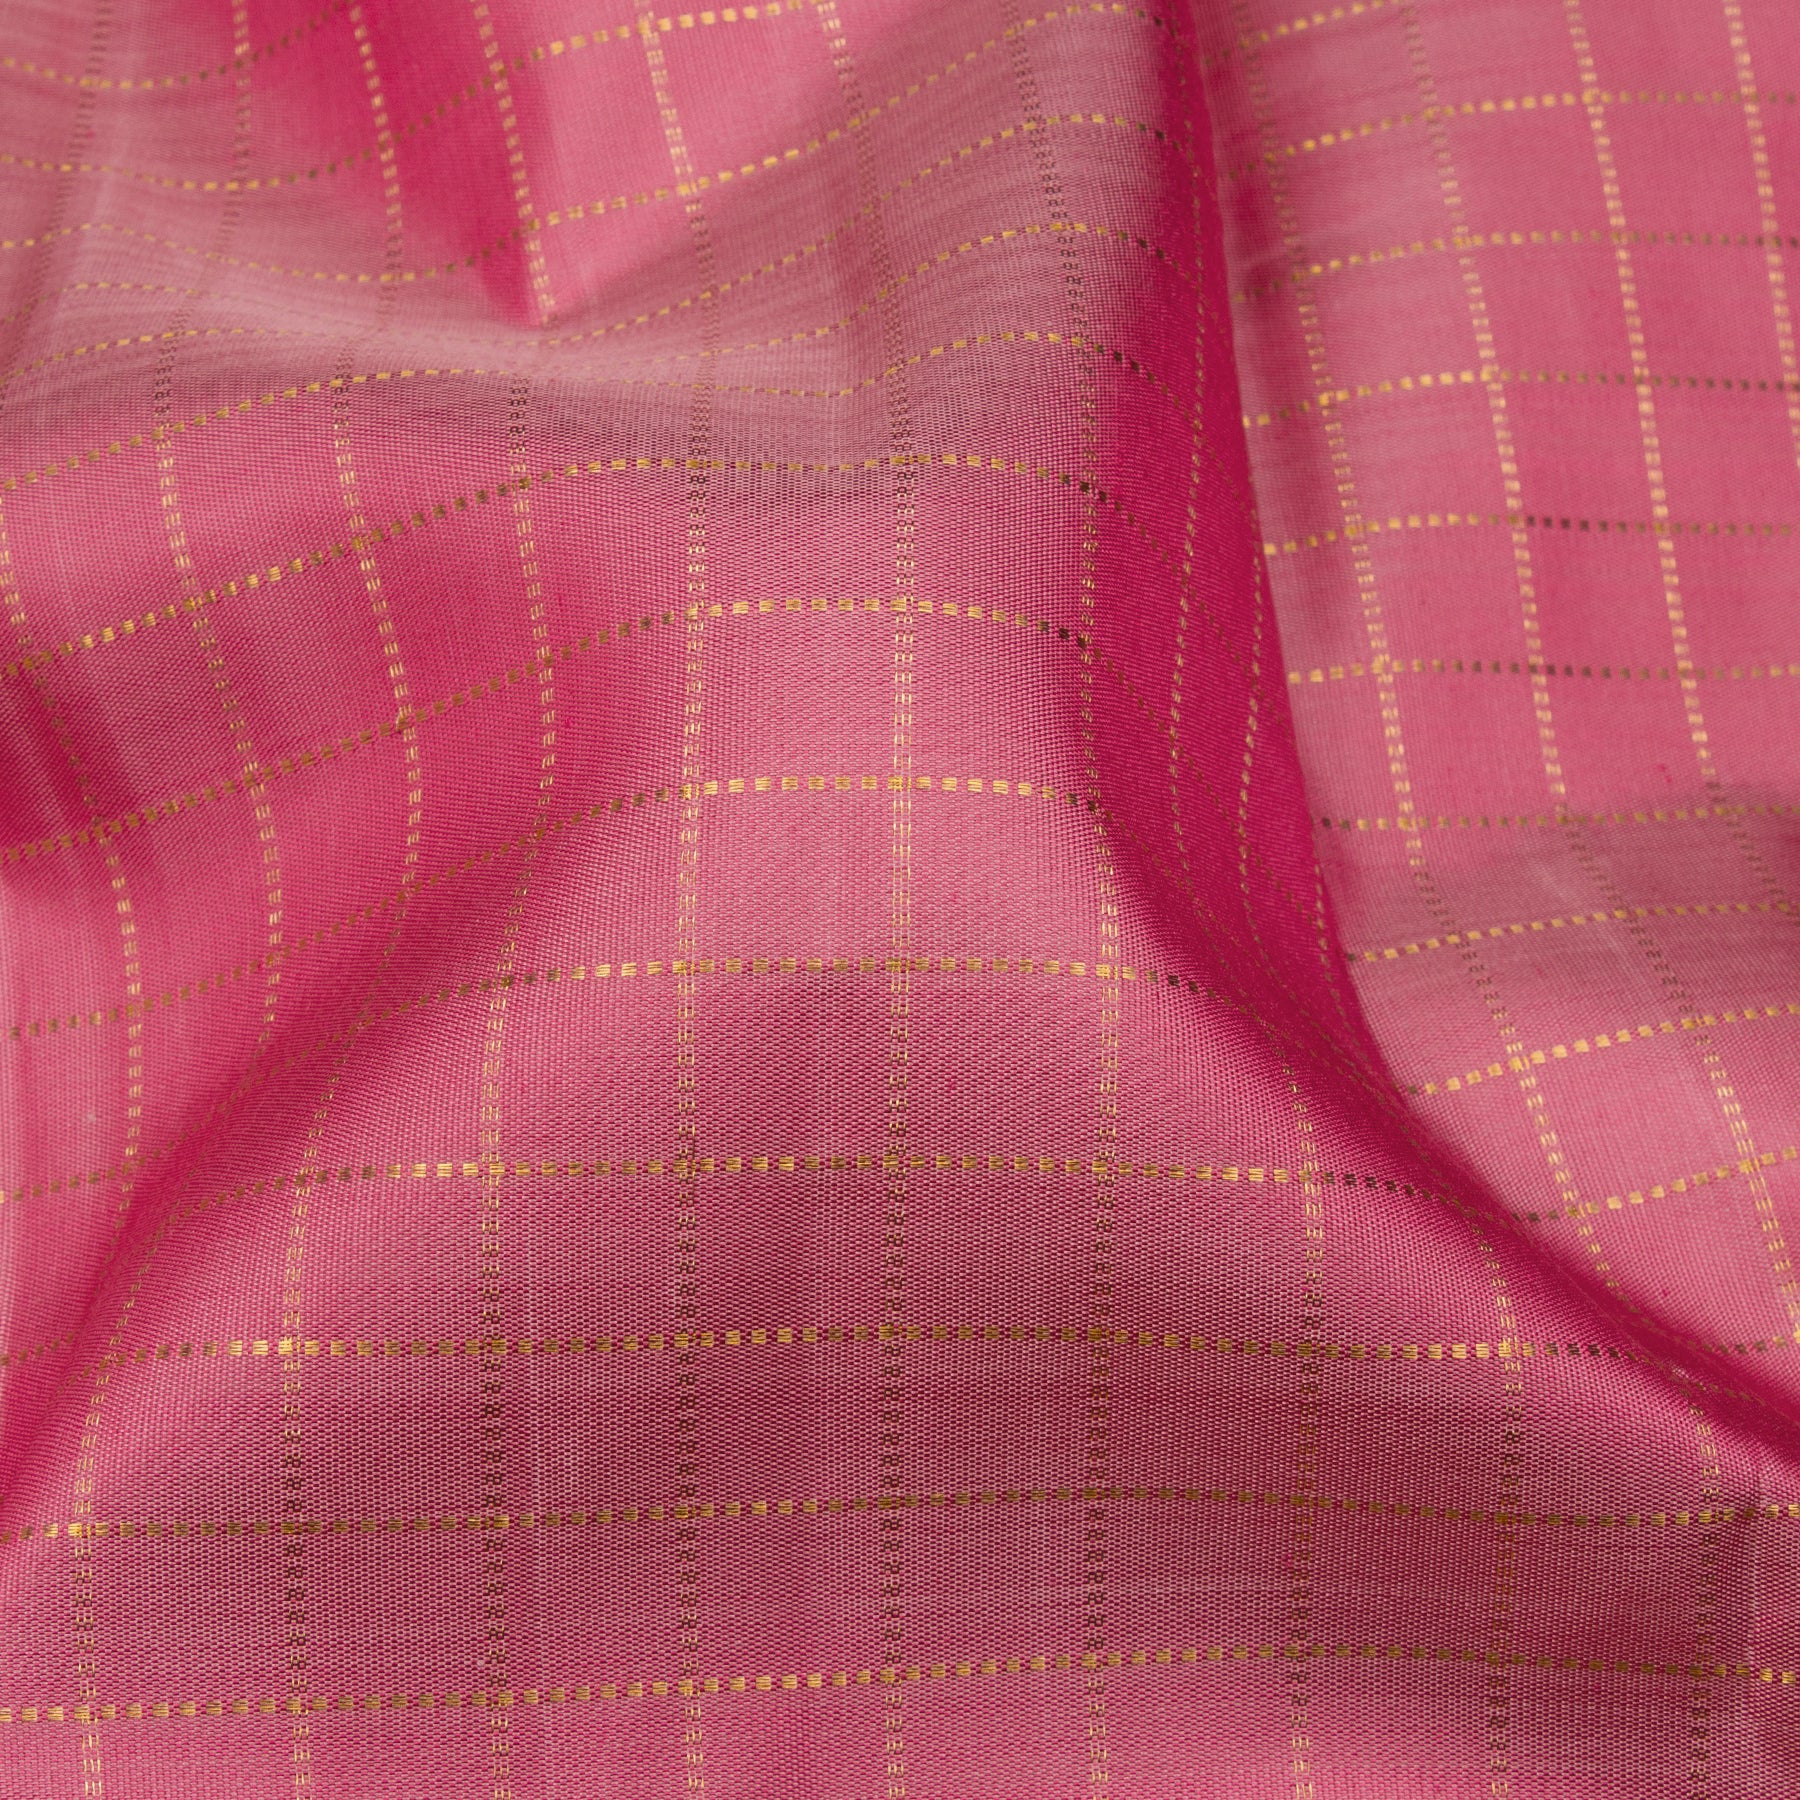 Kanakavalli Kanjivaram Silk Sari 23-110-HS001-13594 - Fabric View